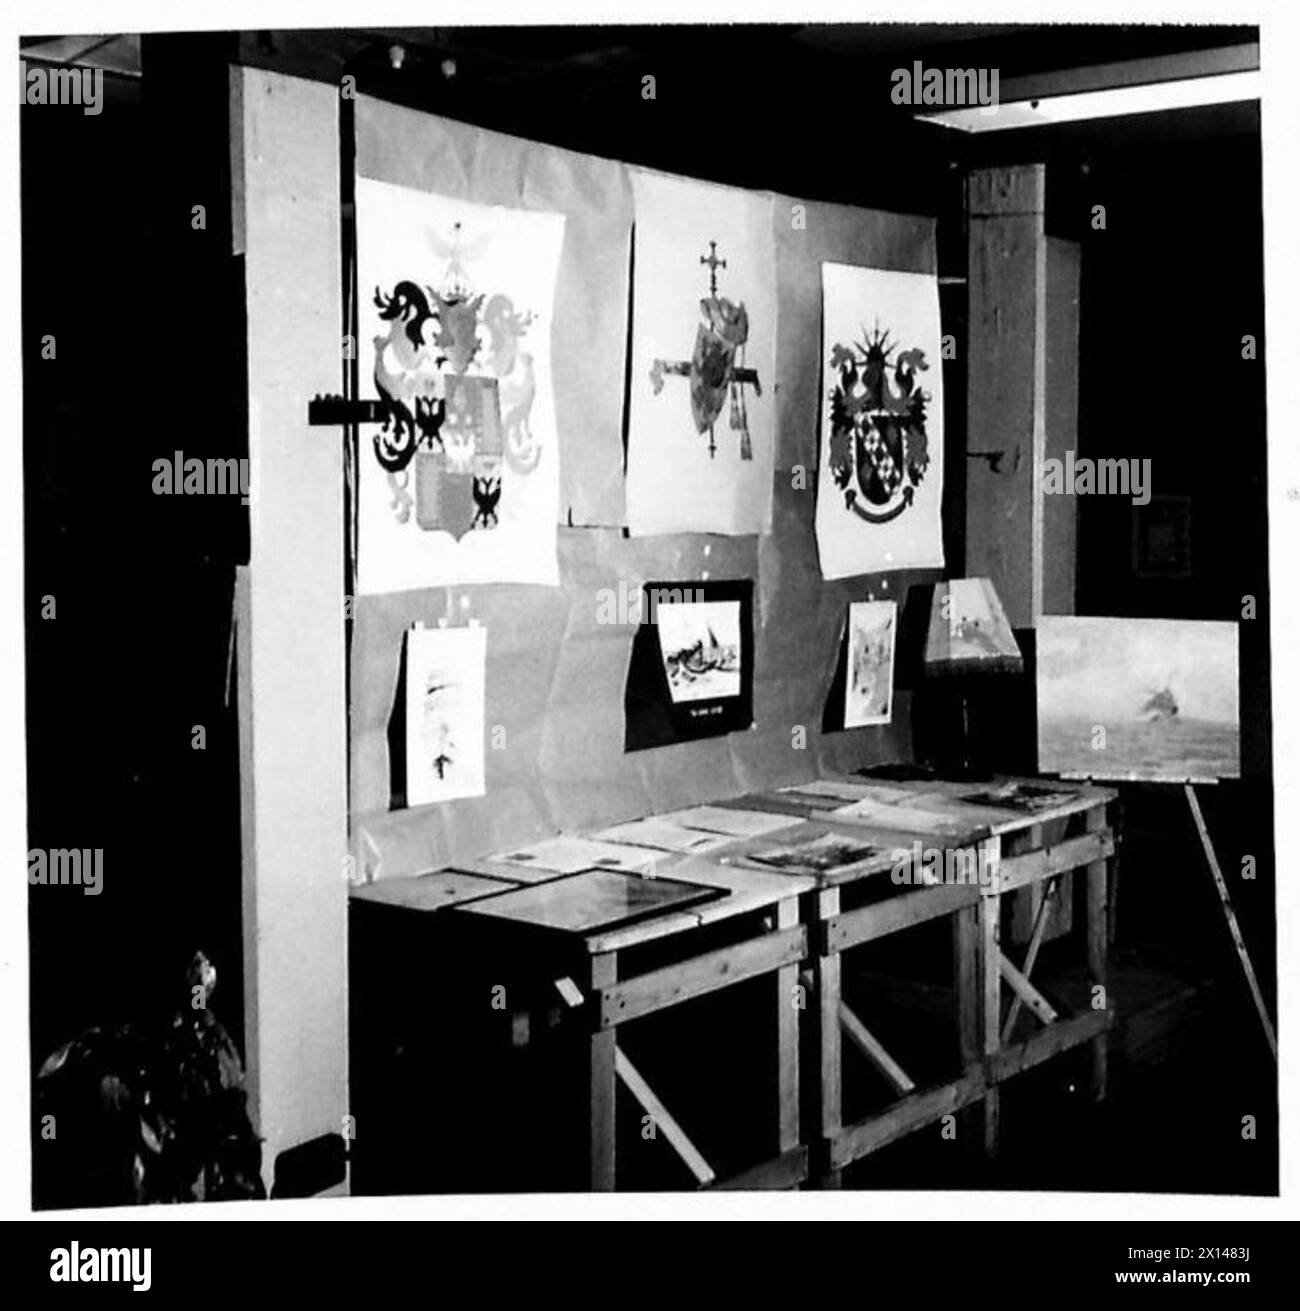 EXPOSICIÓN DE ARTE DE LA OFICINA DE GUERRA: Una serie de fotografías tomadas de pinturas y artesanías ejecutadas por personal militar y civil de la Oficina de Guerra exhibidas por miembros del Gremio de Arte de la Oficina de Guerra del Ejército Británico Foto de stock